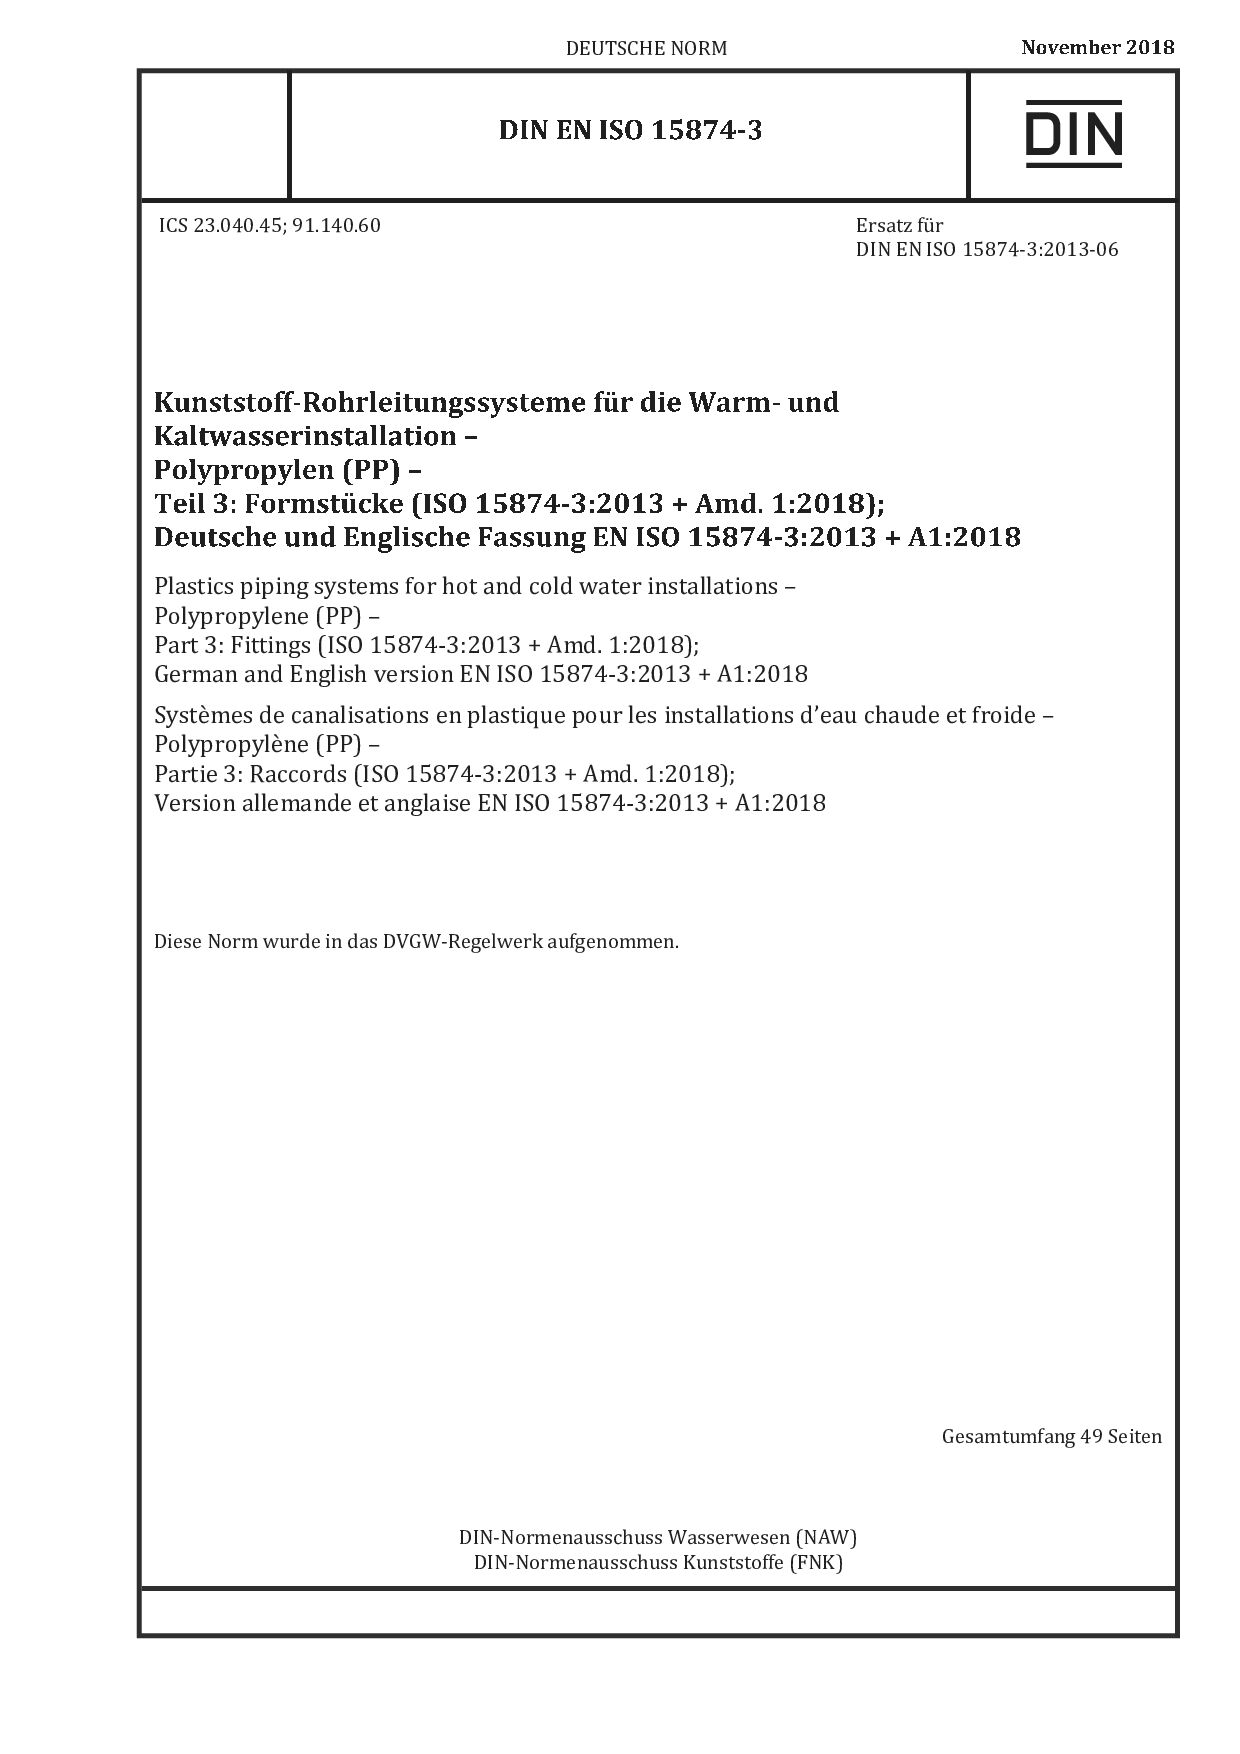 DIN EN ISO 15874-3:2018封面图